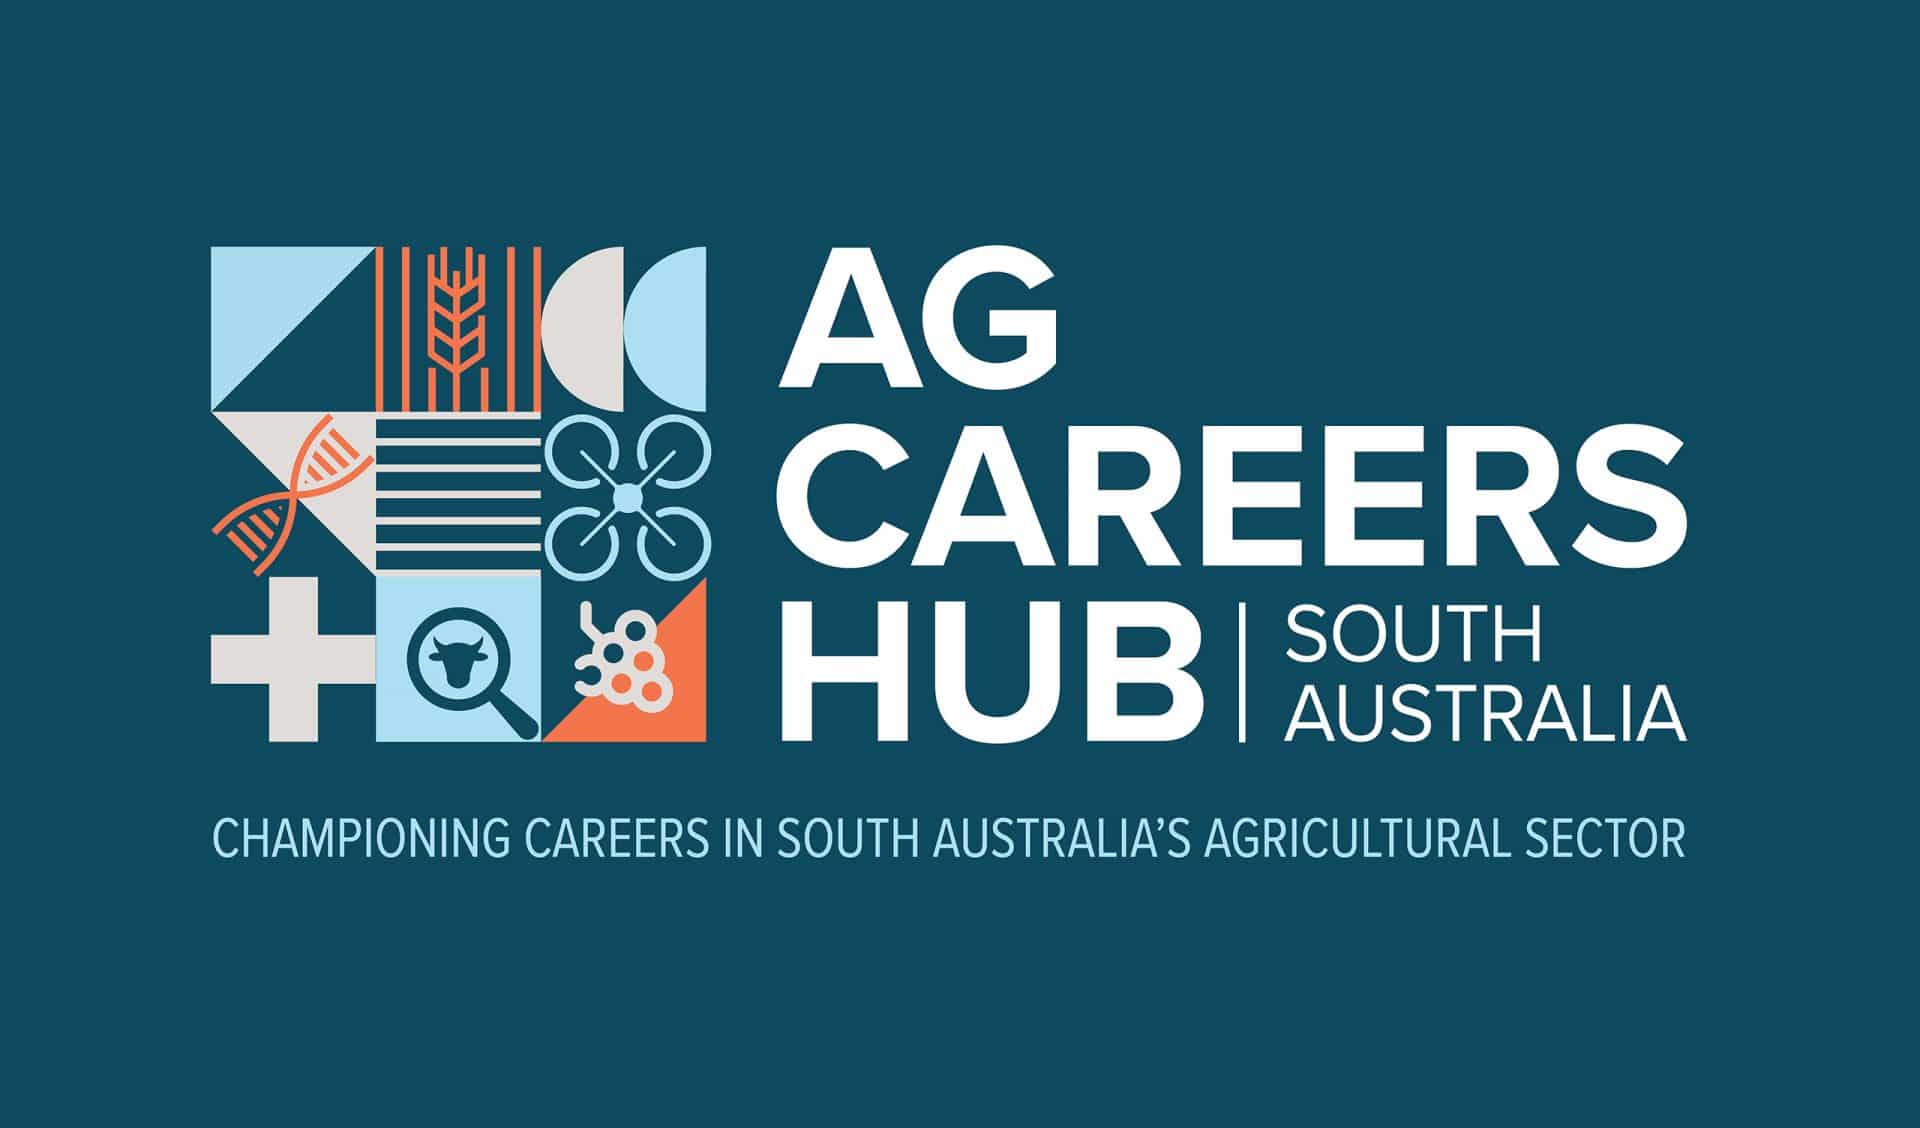 The SA Ag Careers Hub